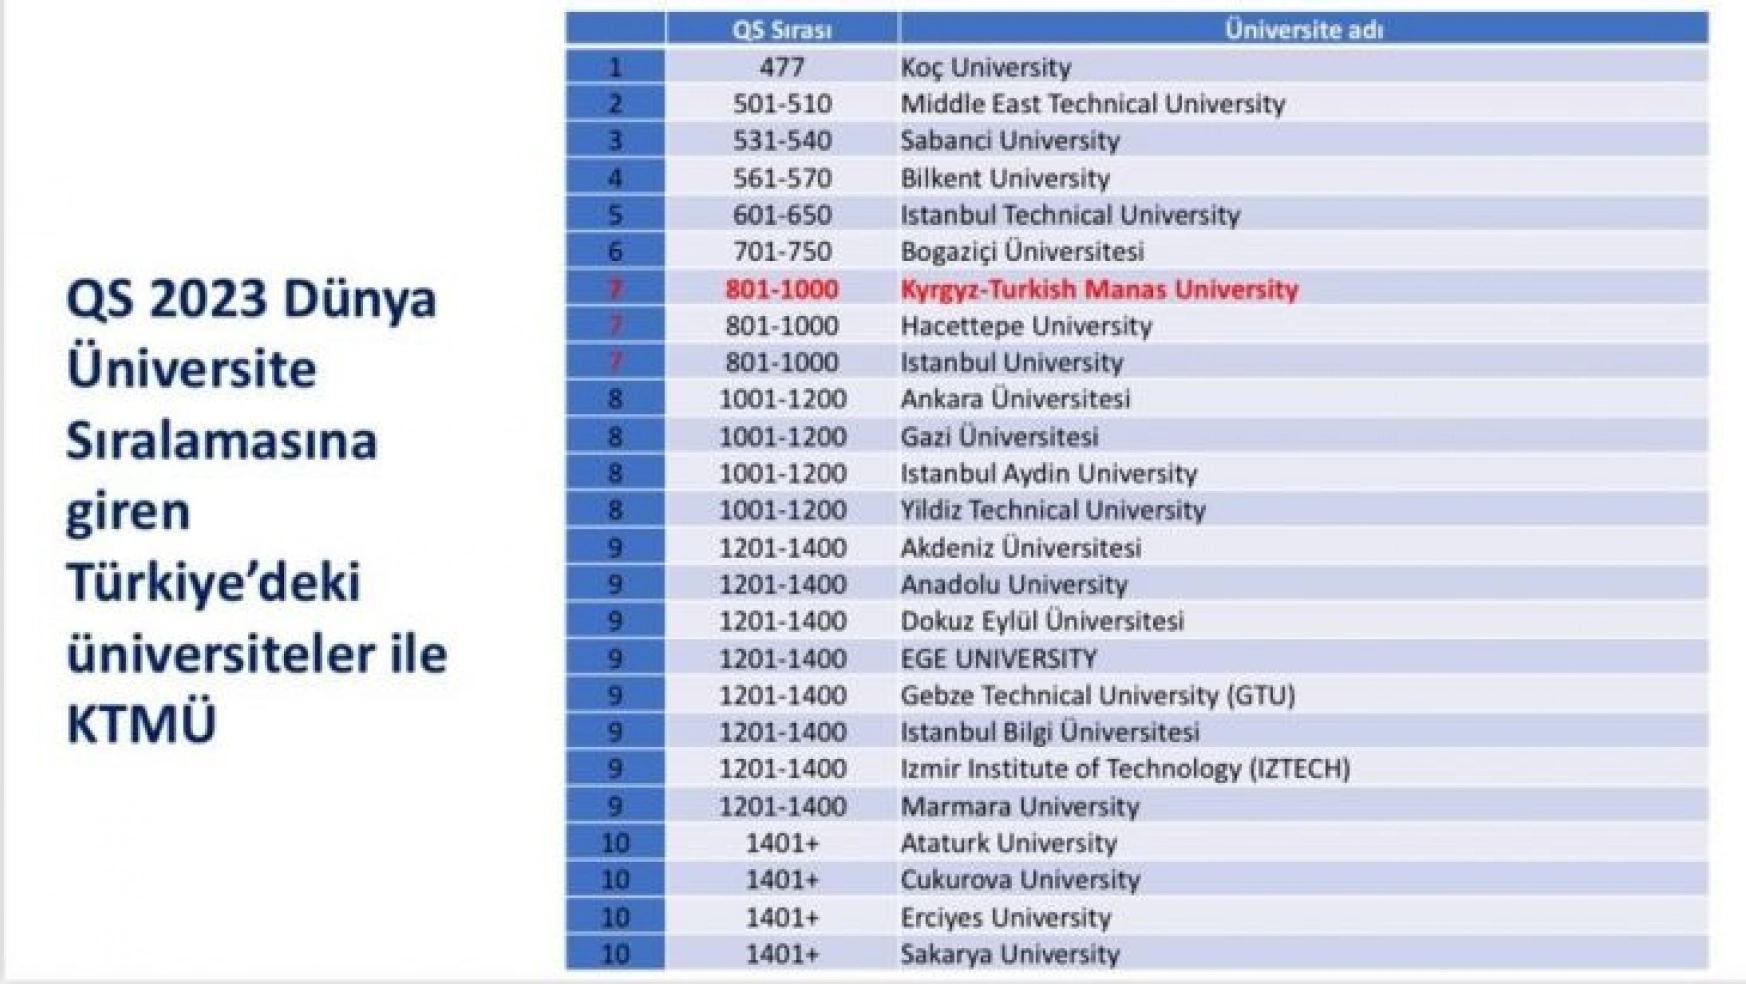 Kırgızistan'ın en iyi üniversitesi Manas, dünya sıralamasında